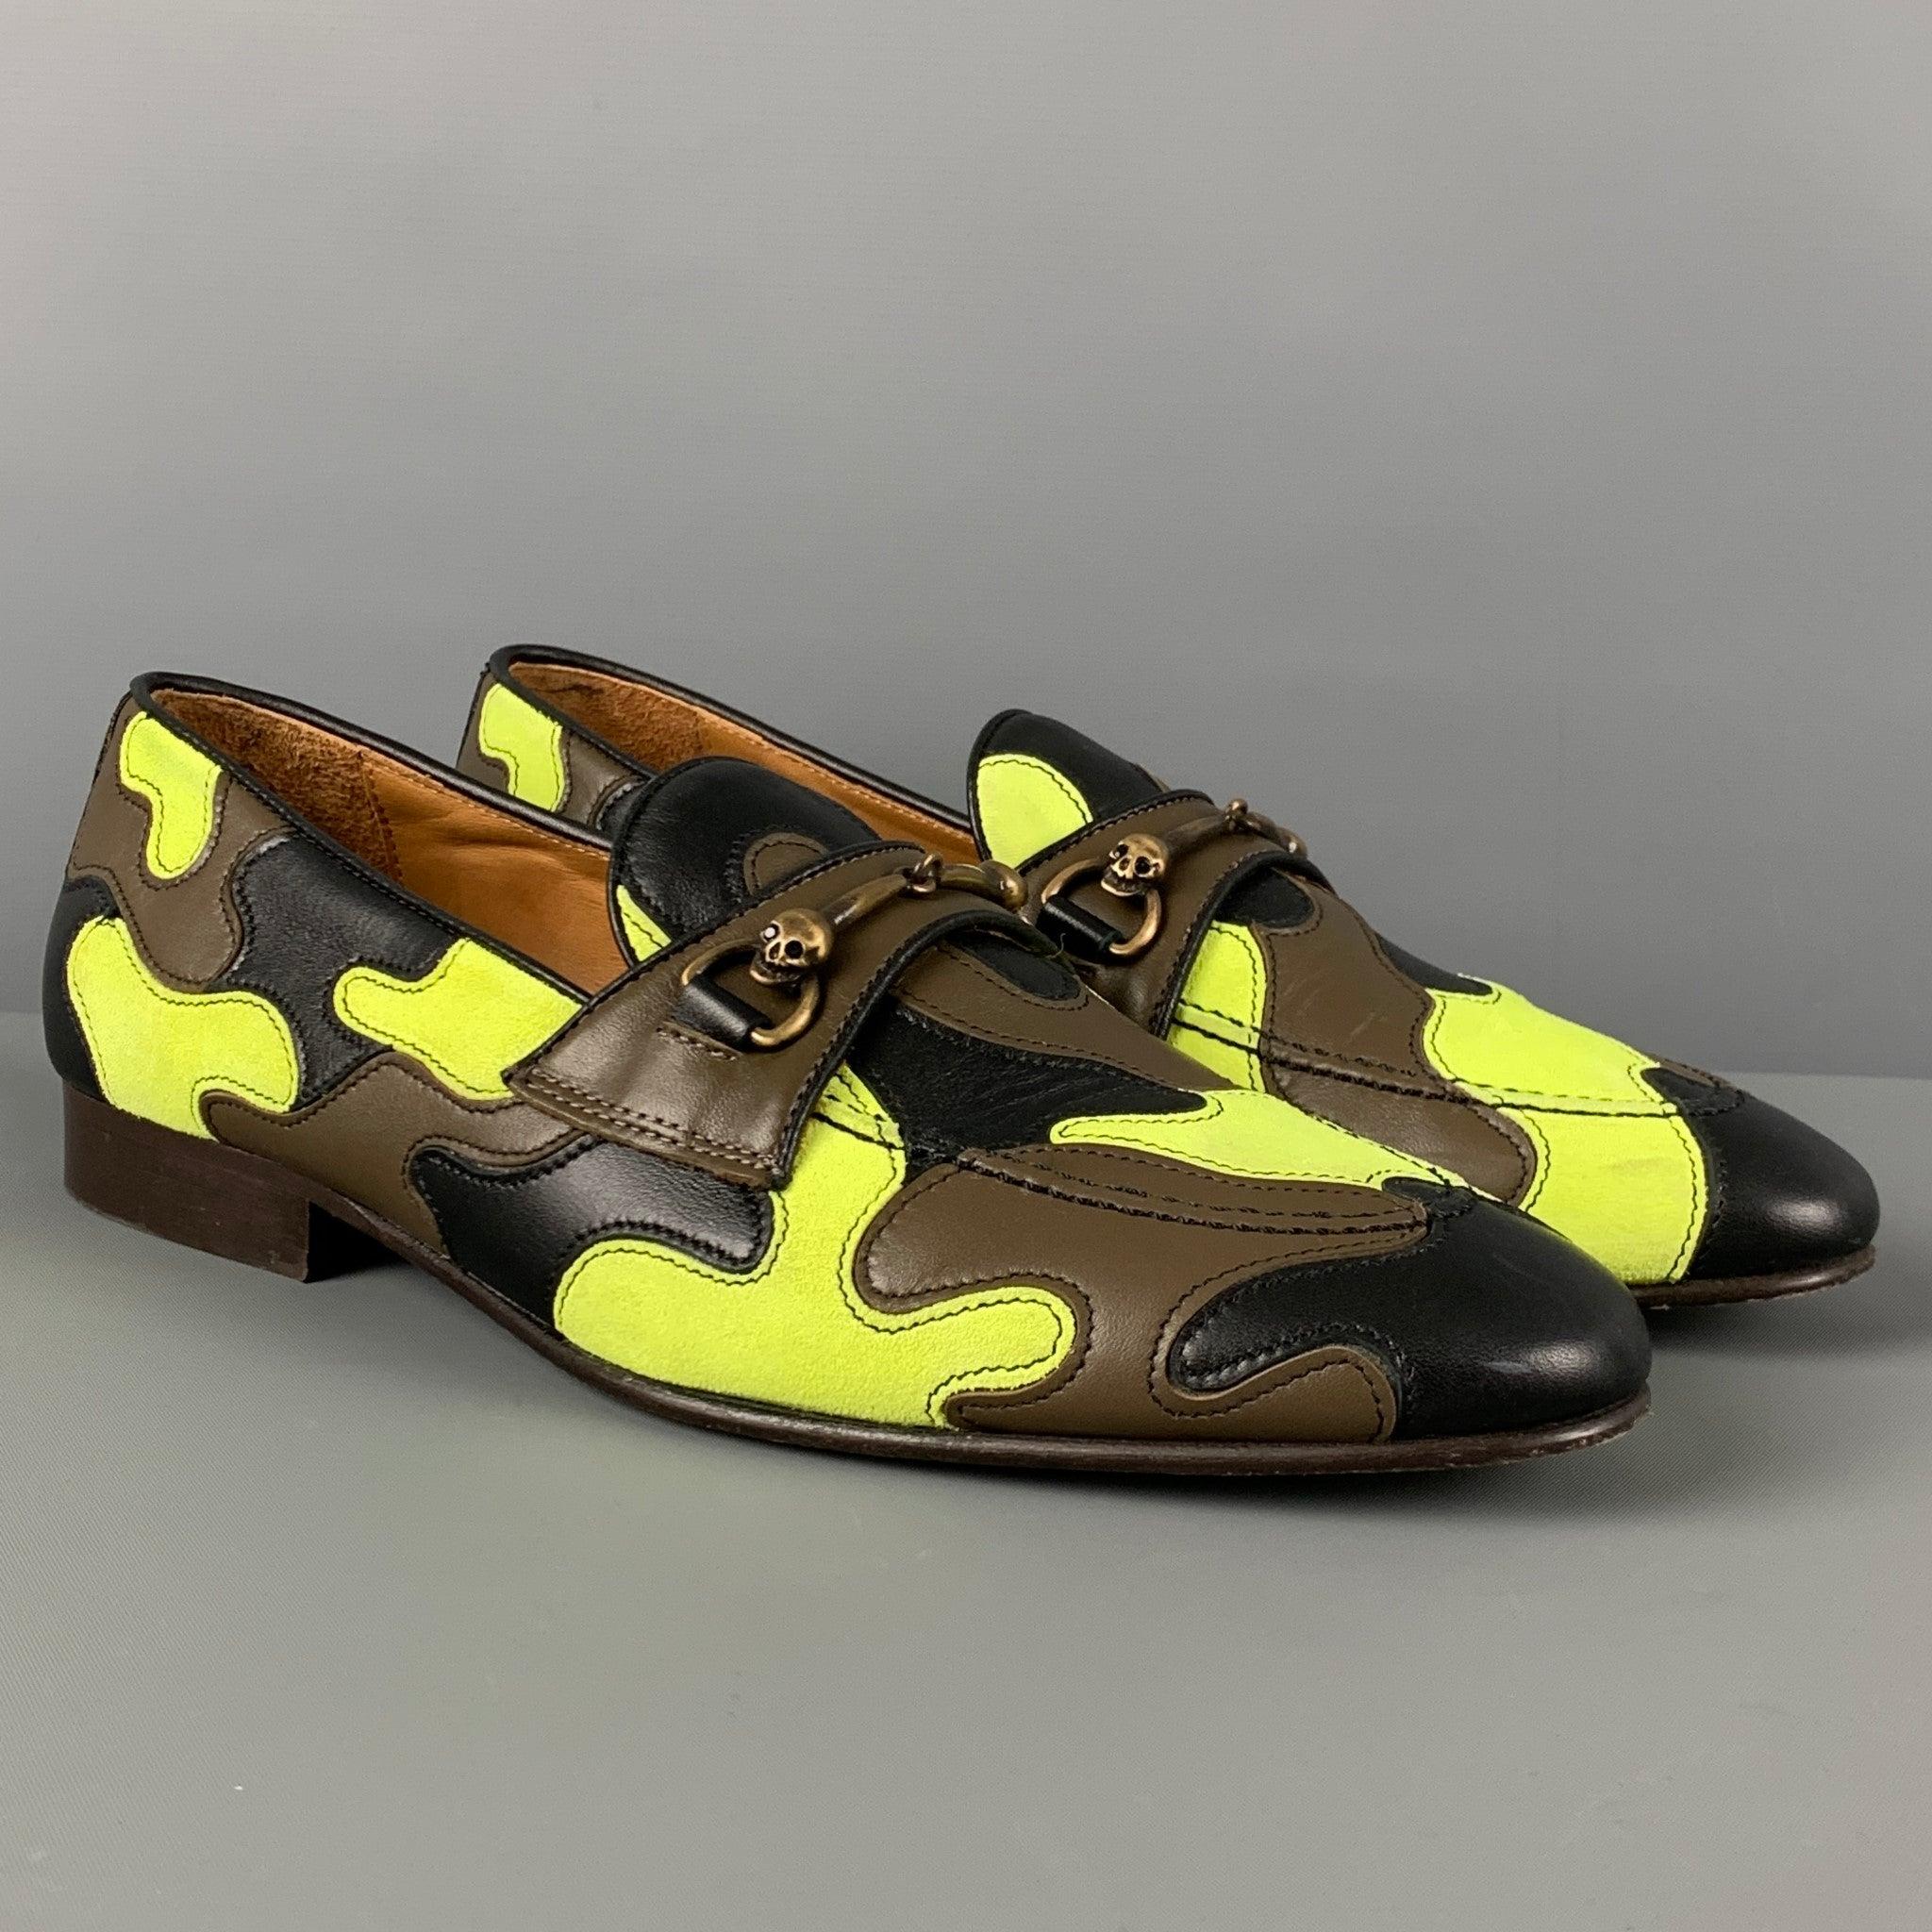 DONALD J PLINER Slipper aus mehrfarbigem Camouflage-Leder mit Hufeisen-Detail und Slip-on-Stil. Hergestellt in Italien.
Sehr gut
Gebrauchtes Zustand. 

Markiert:   7,5 DOutsole: 11 Zoll  x 3.5 Zoll 
  
  
 
Referenz: 123258
Kategorie: Loafer
Mehr